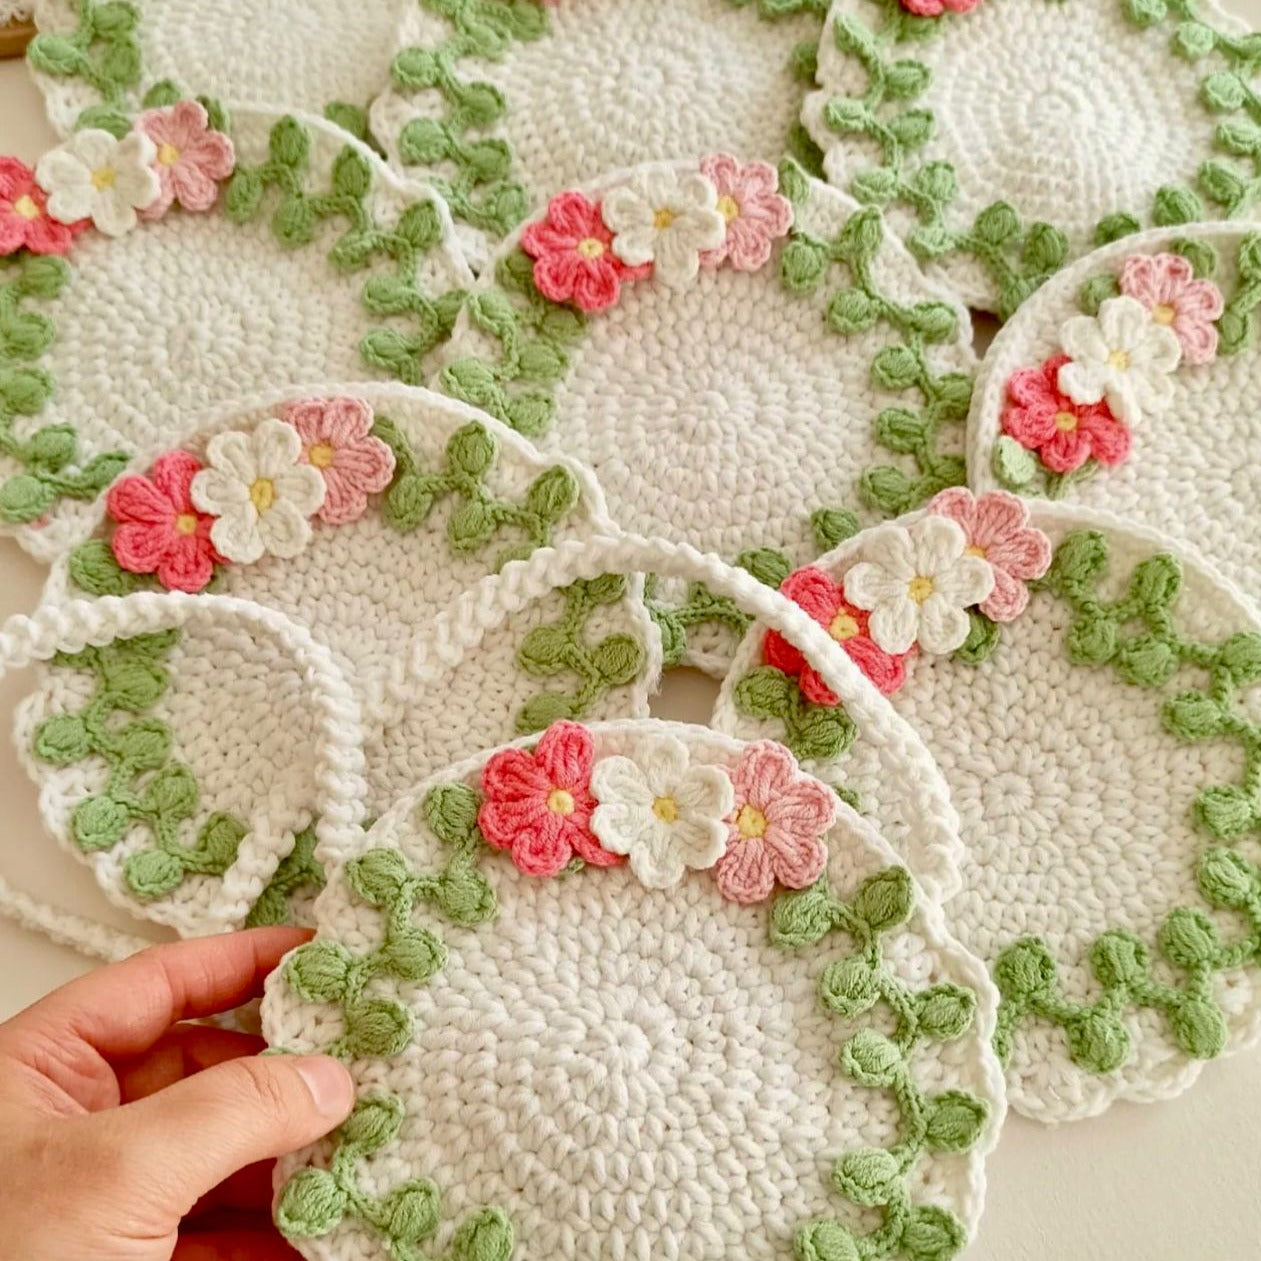 Crochet Children's Bag with Flower Design